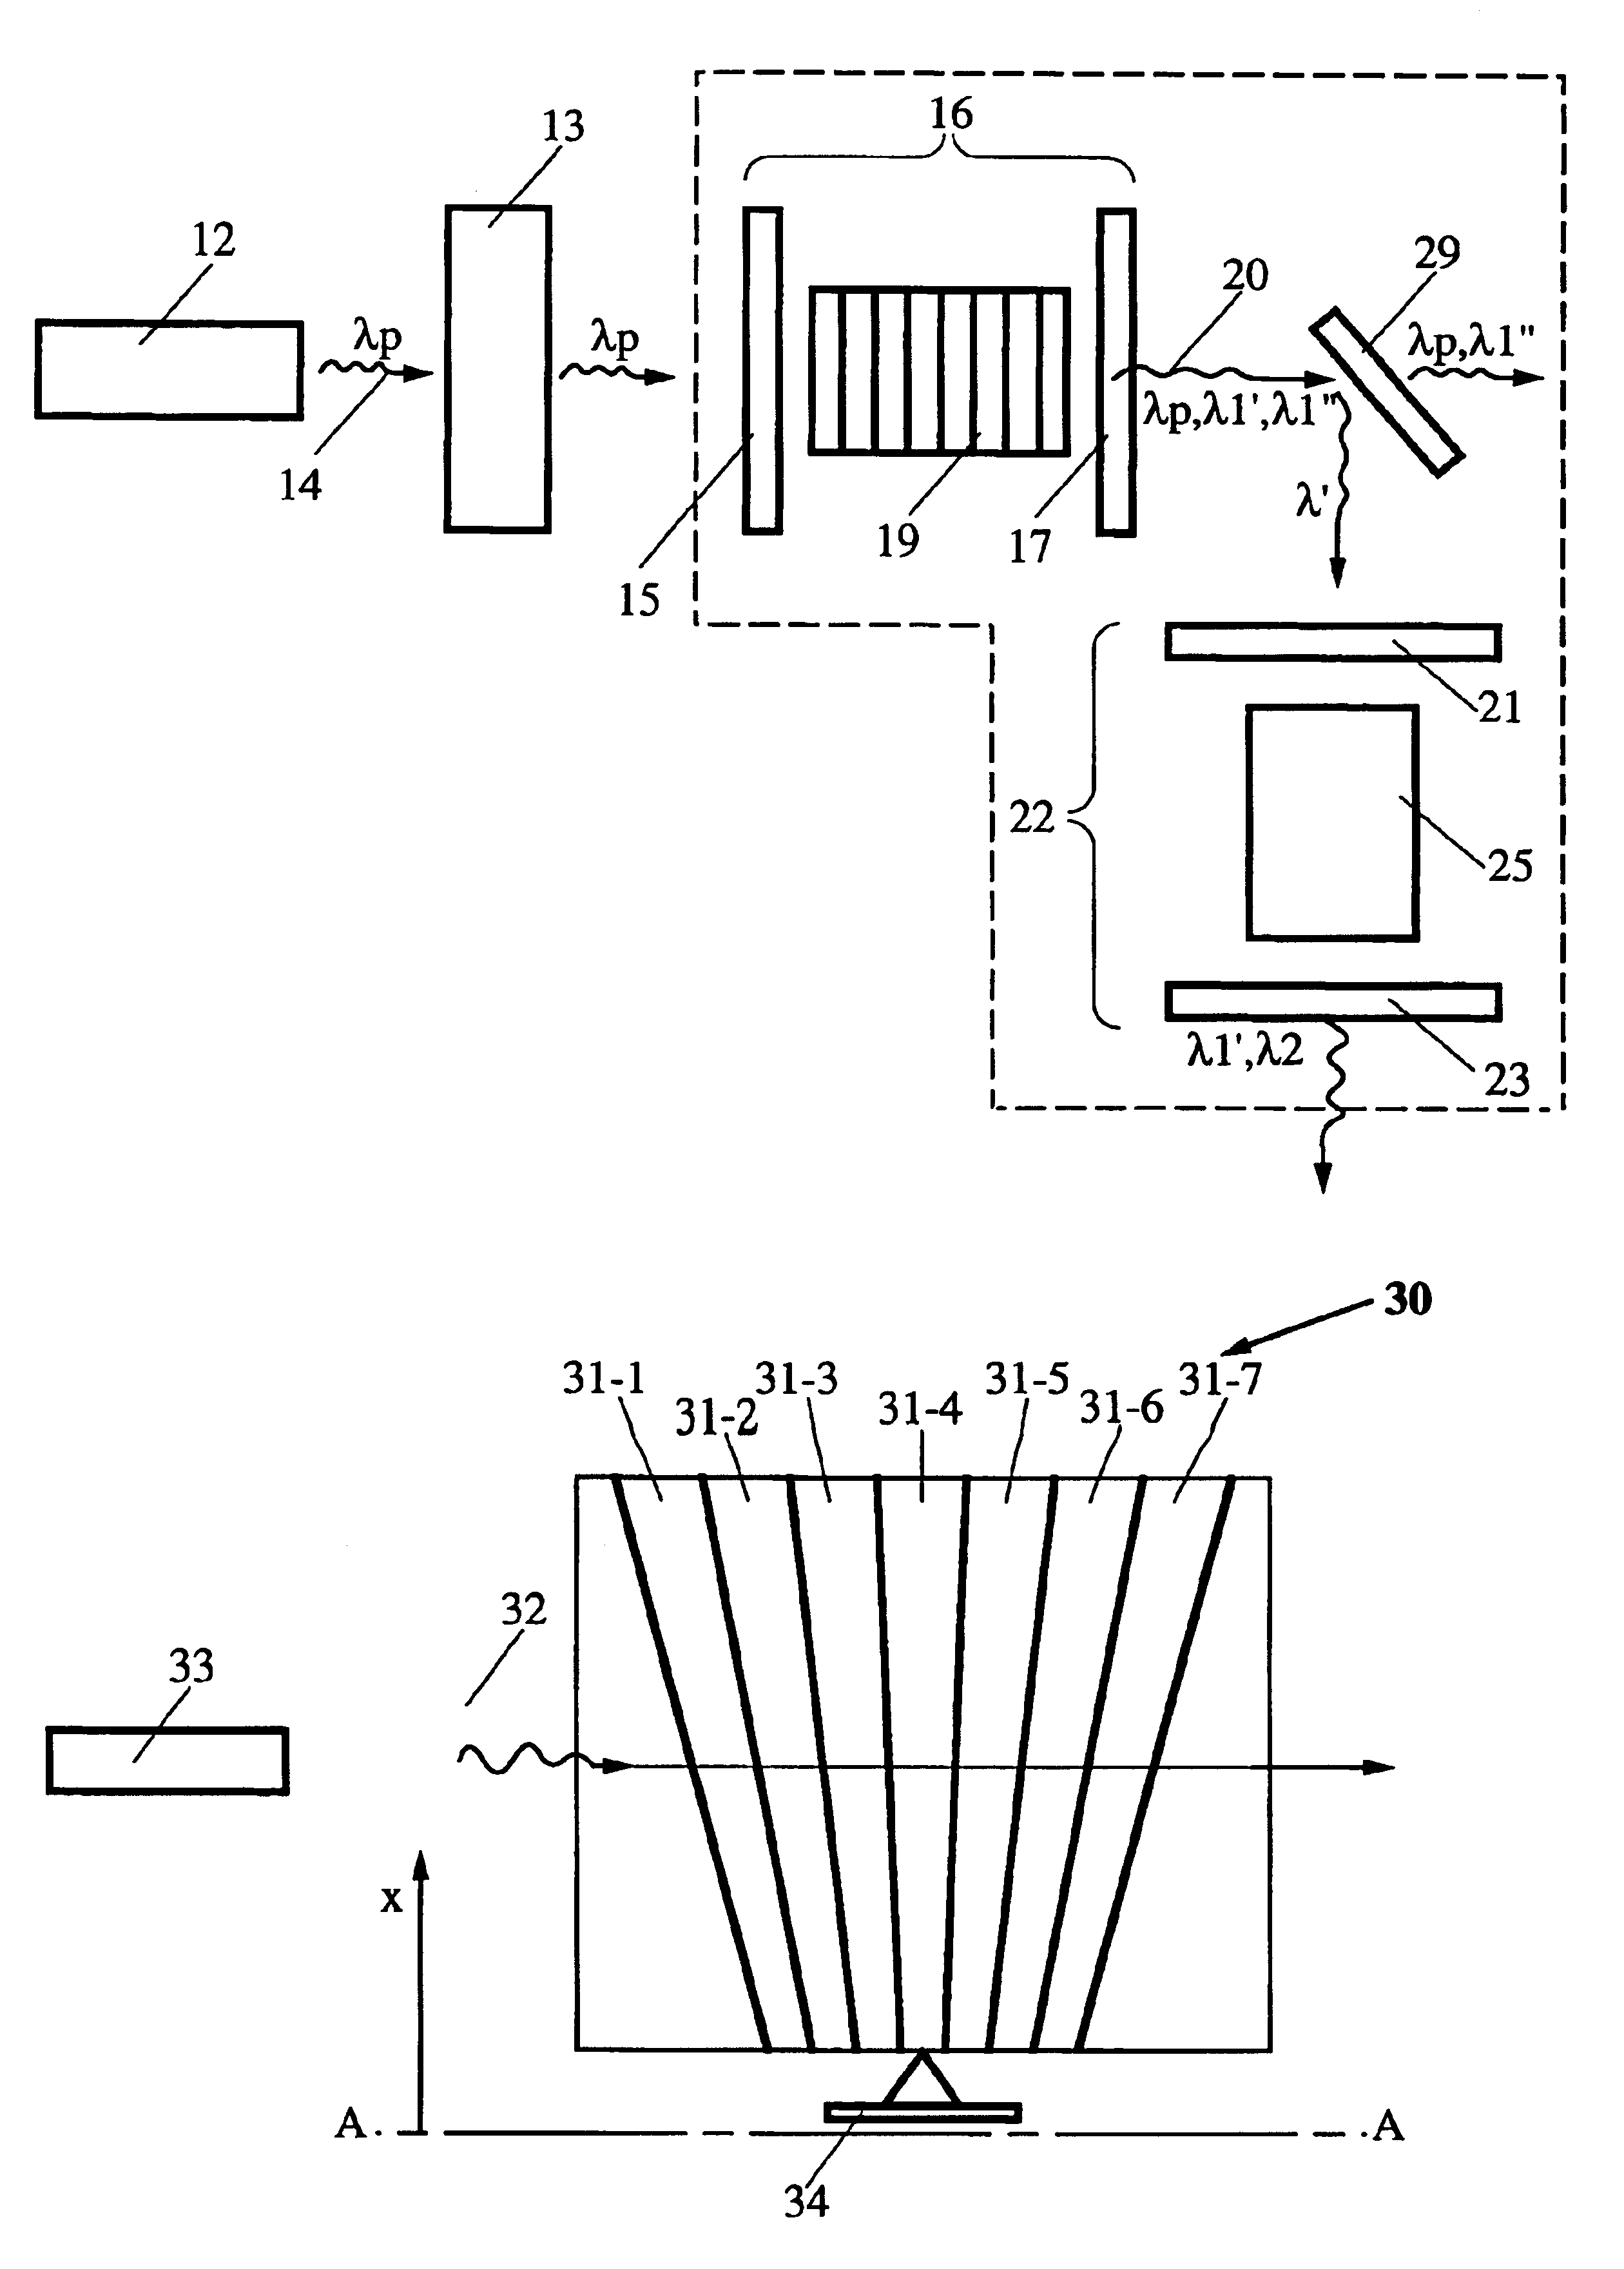 Cascaded noncritical optical parametric oscillator